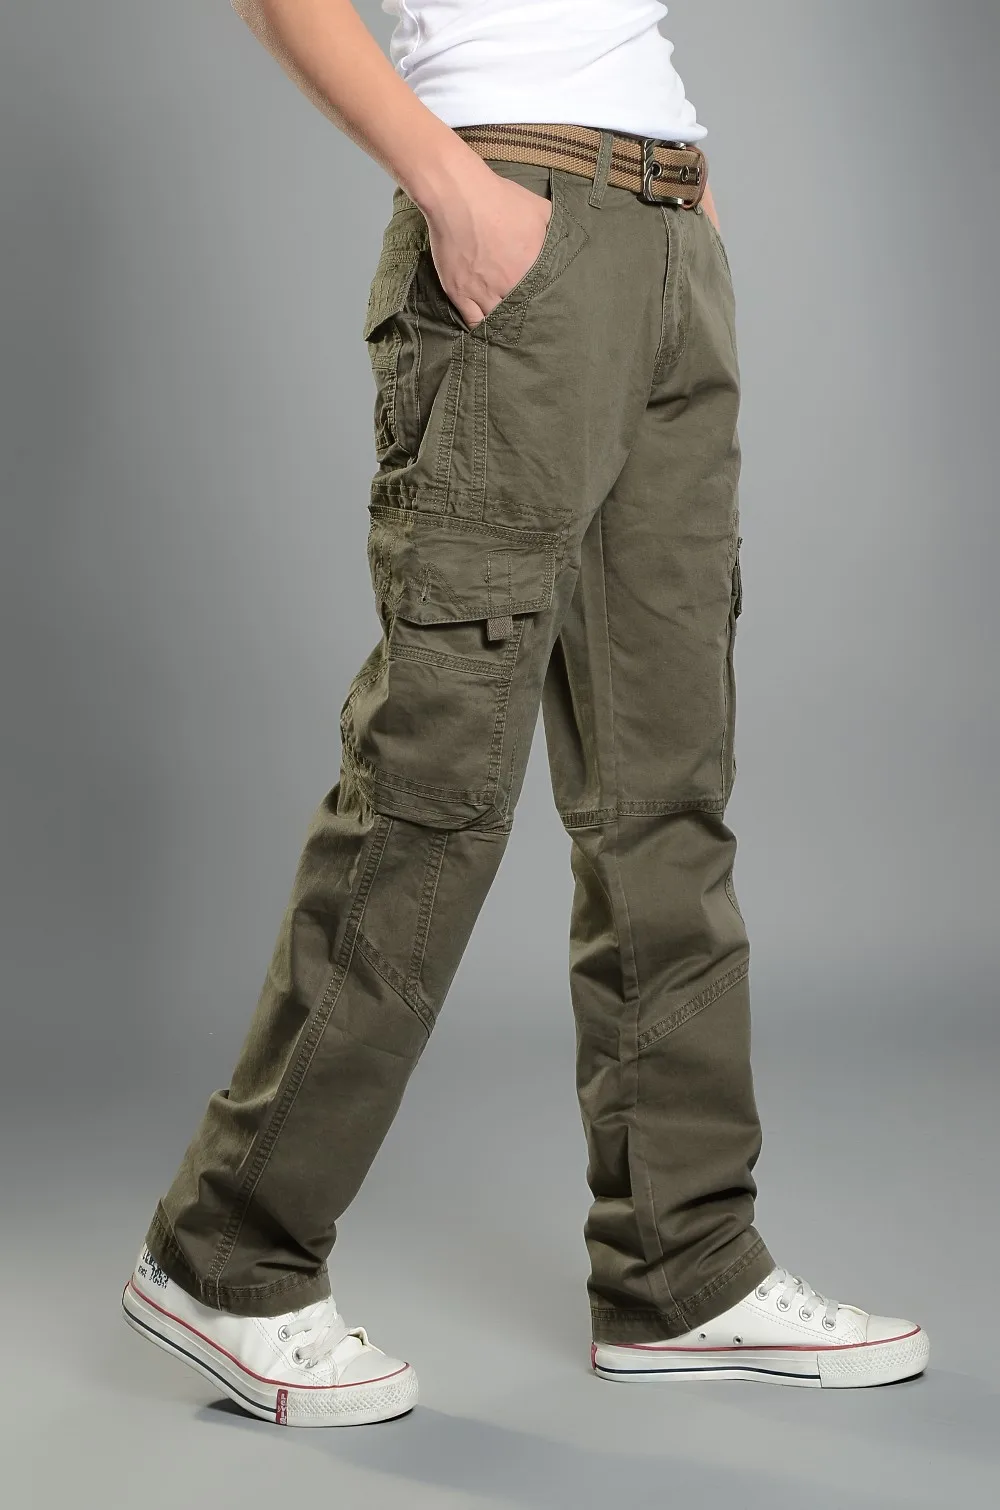 Прочные брюки-карго Для мужчин Боевая Спецодежда армейские военные брюки хлопок Мульти Карманы стрейч Для мужчин s свободные прямые